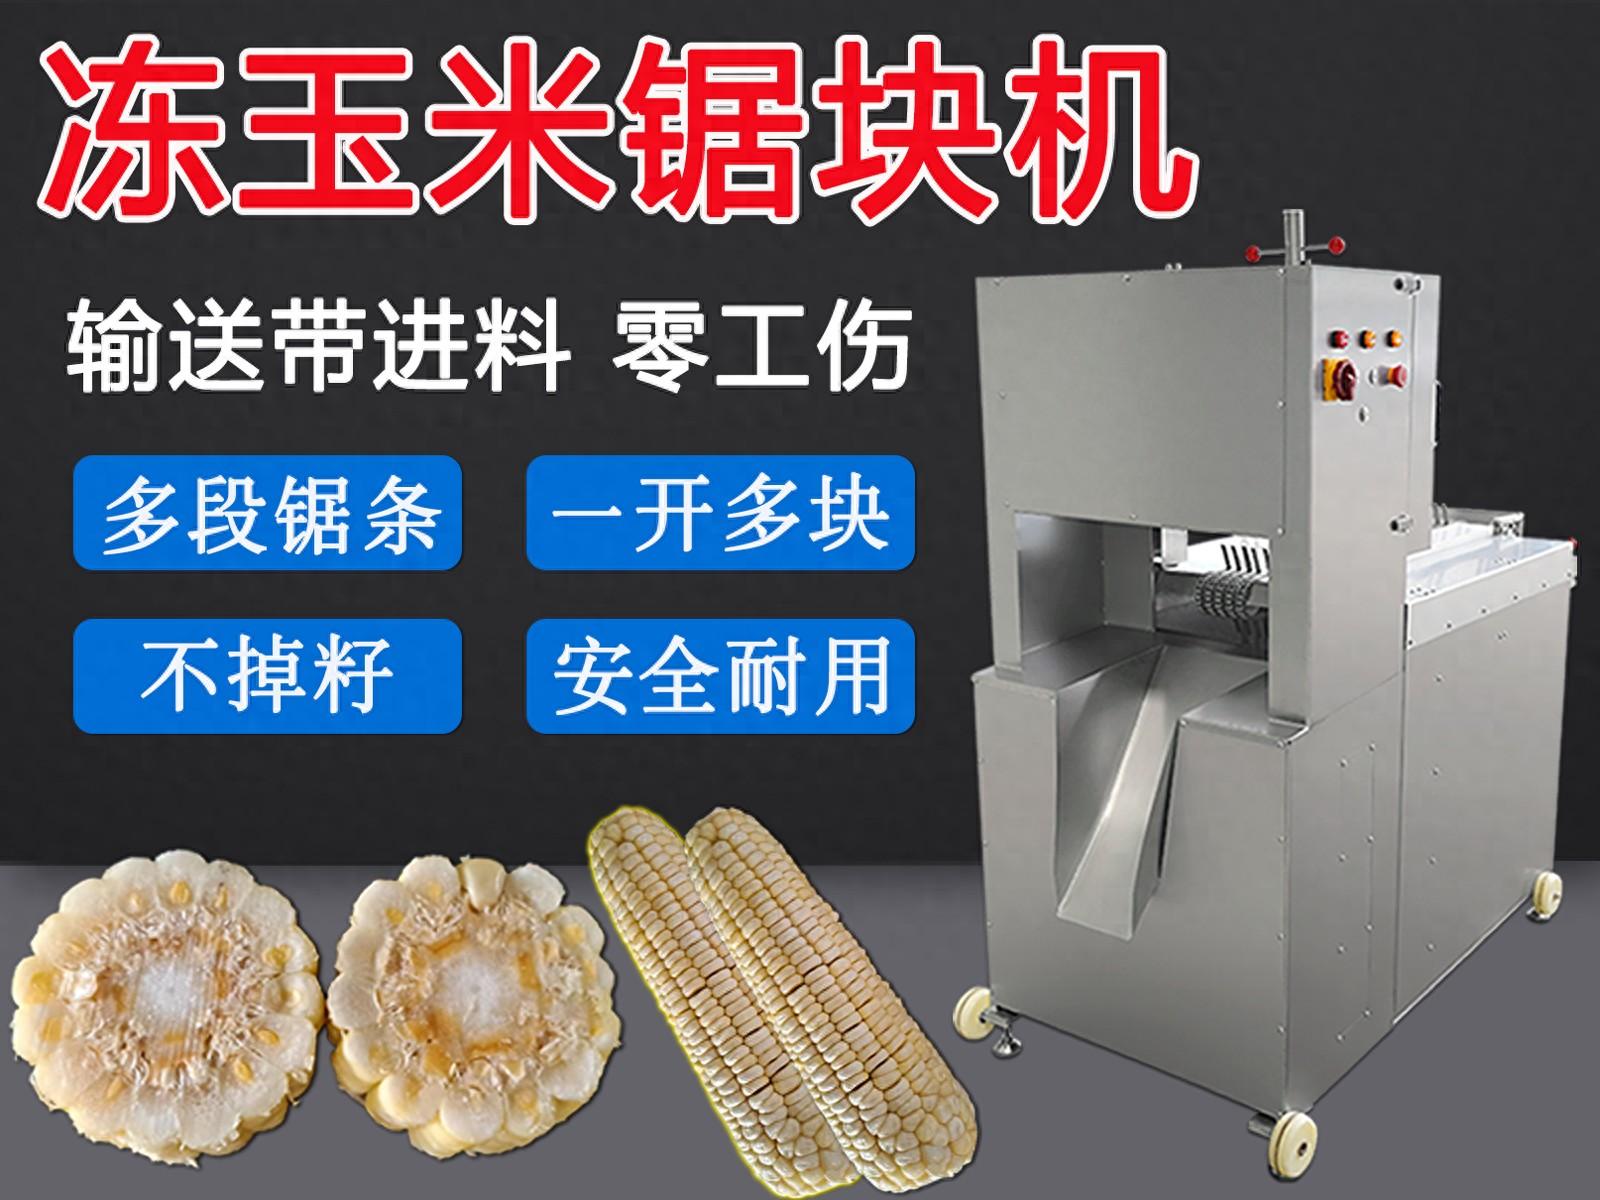 冻玉米切段机的不掉籽、切口平、损耗少是它在东北广受欢迎的原因